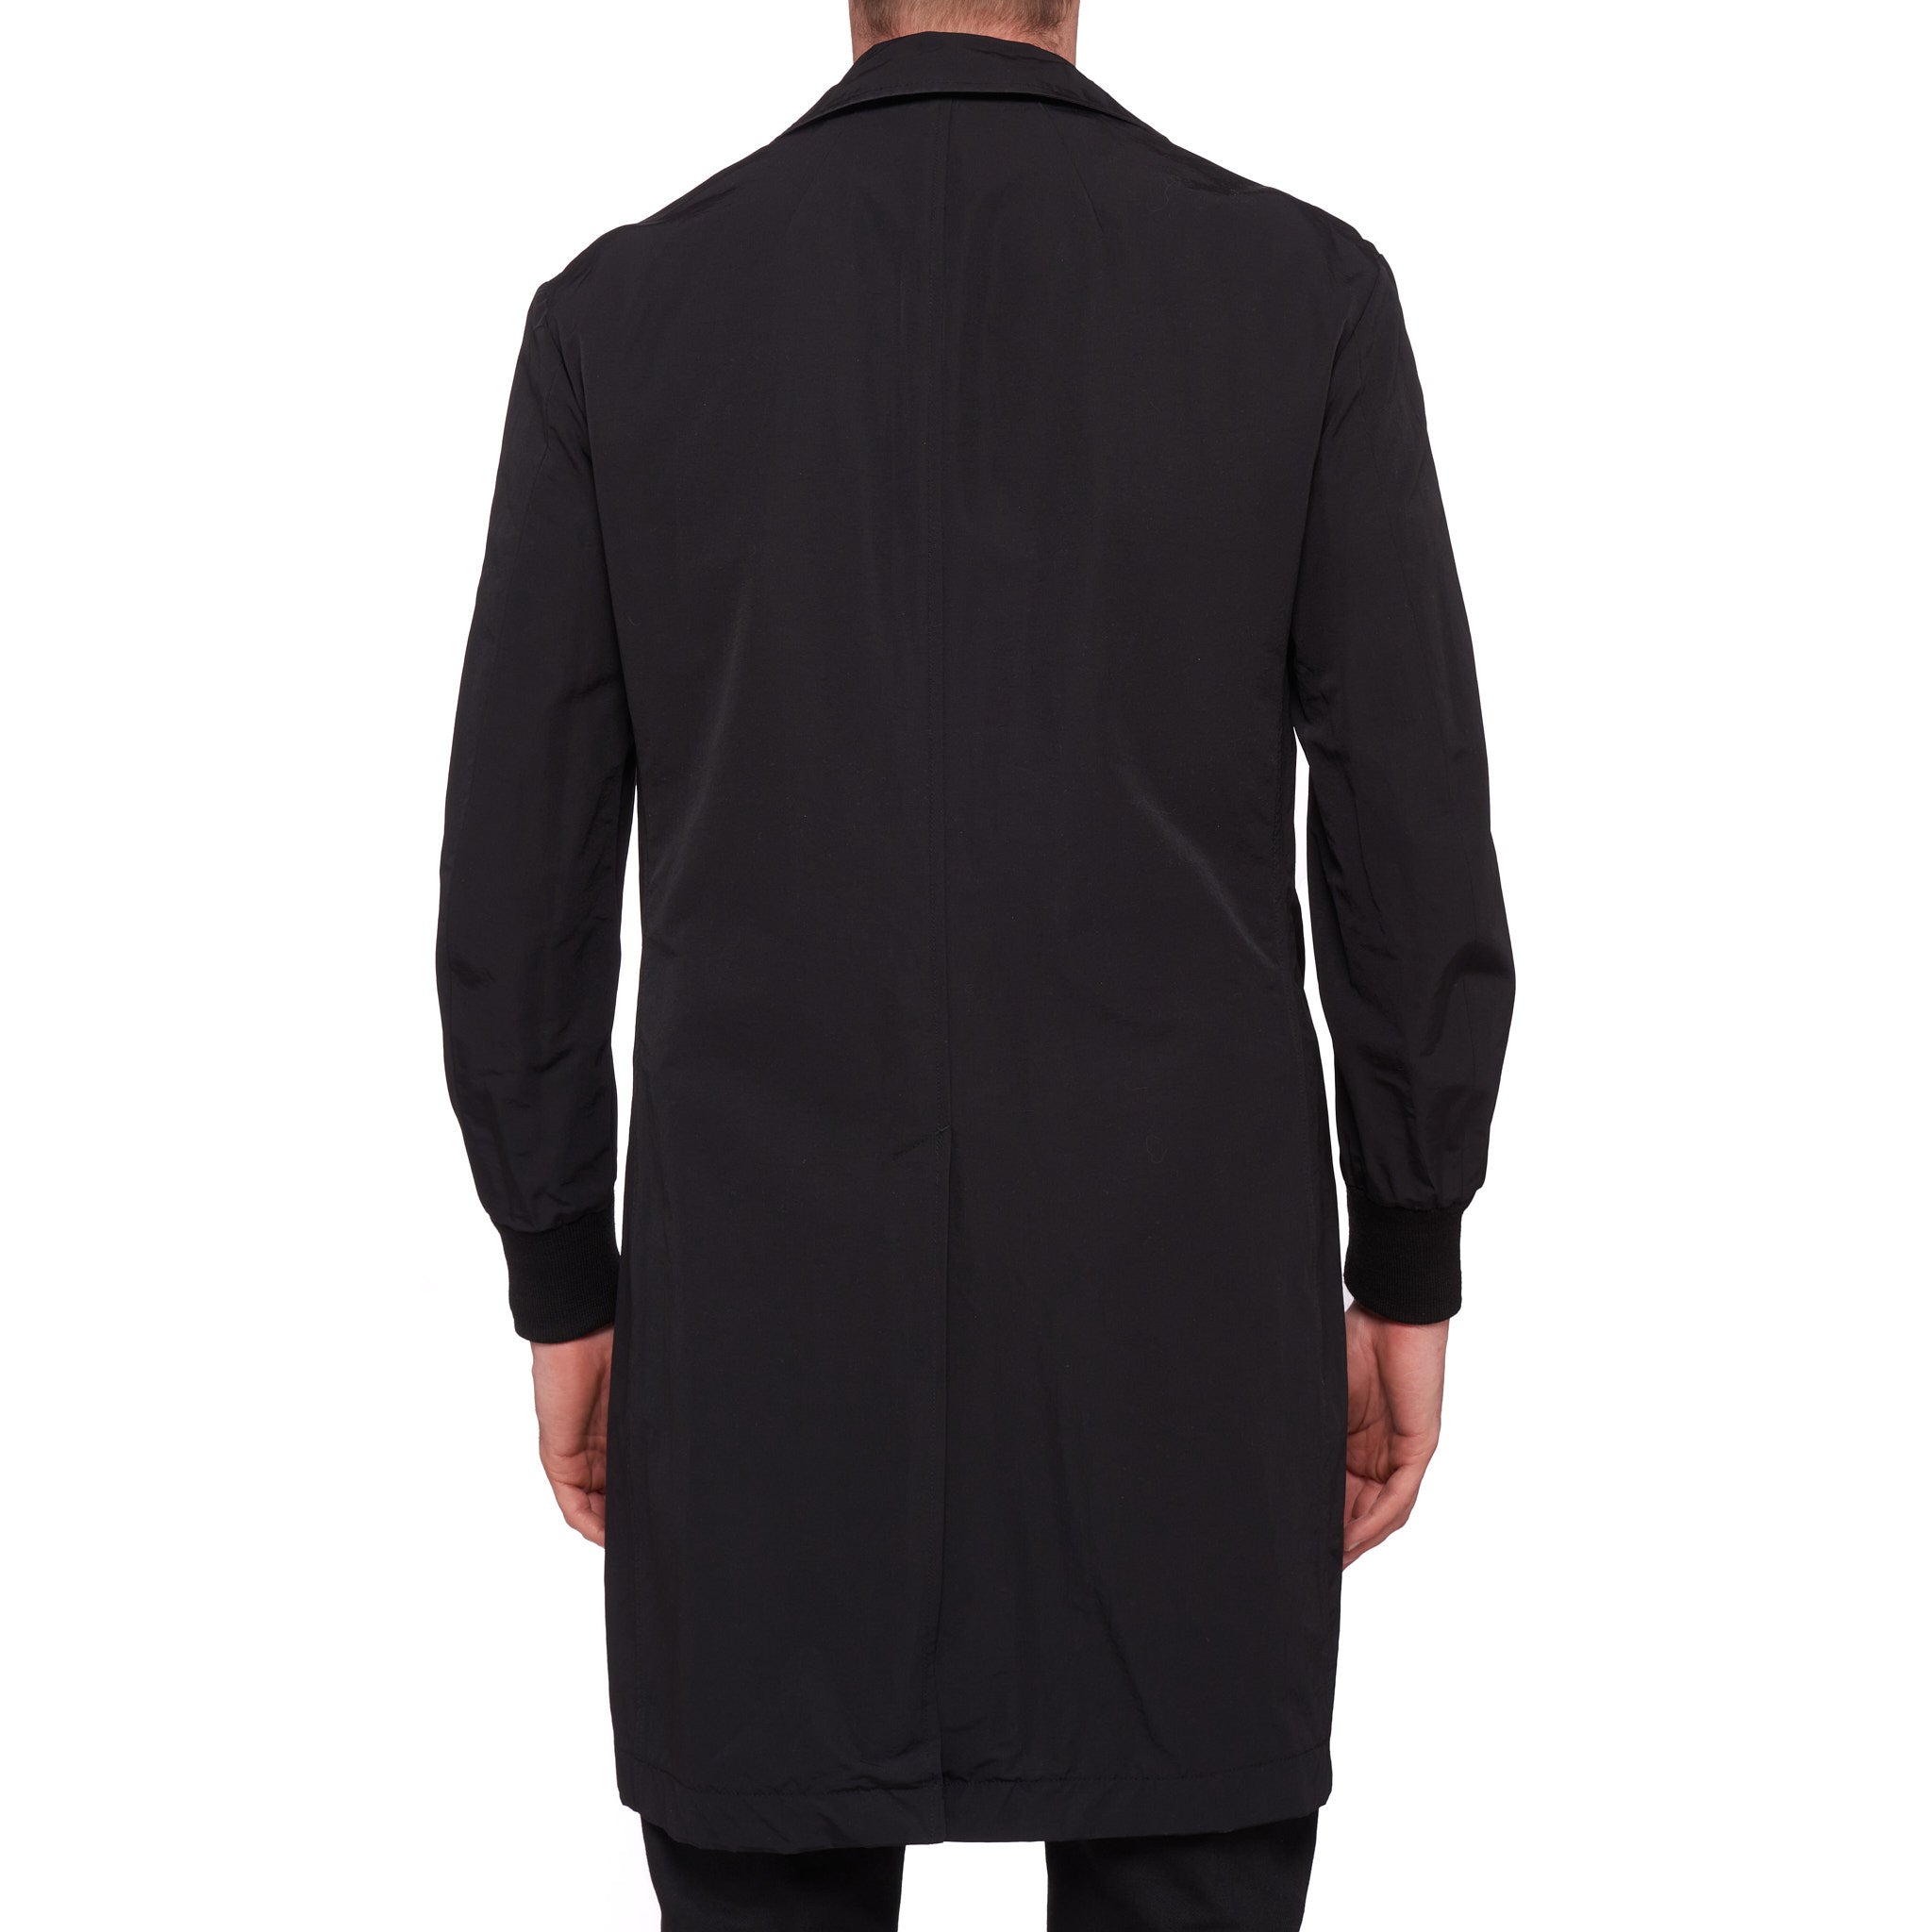 MAISON MIHARA YASUHIRO Black Satin Reversible Jacket Coat Size 46 US X ...